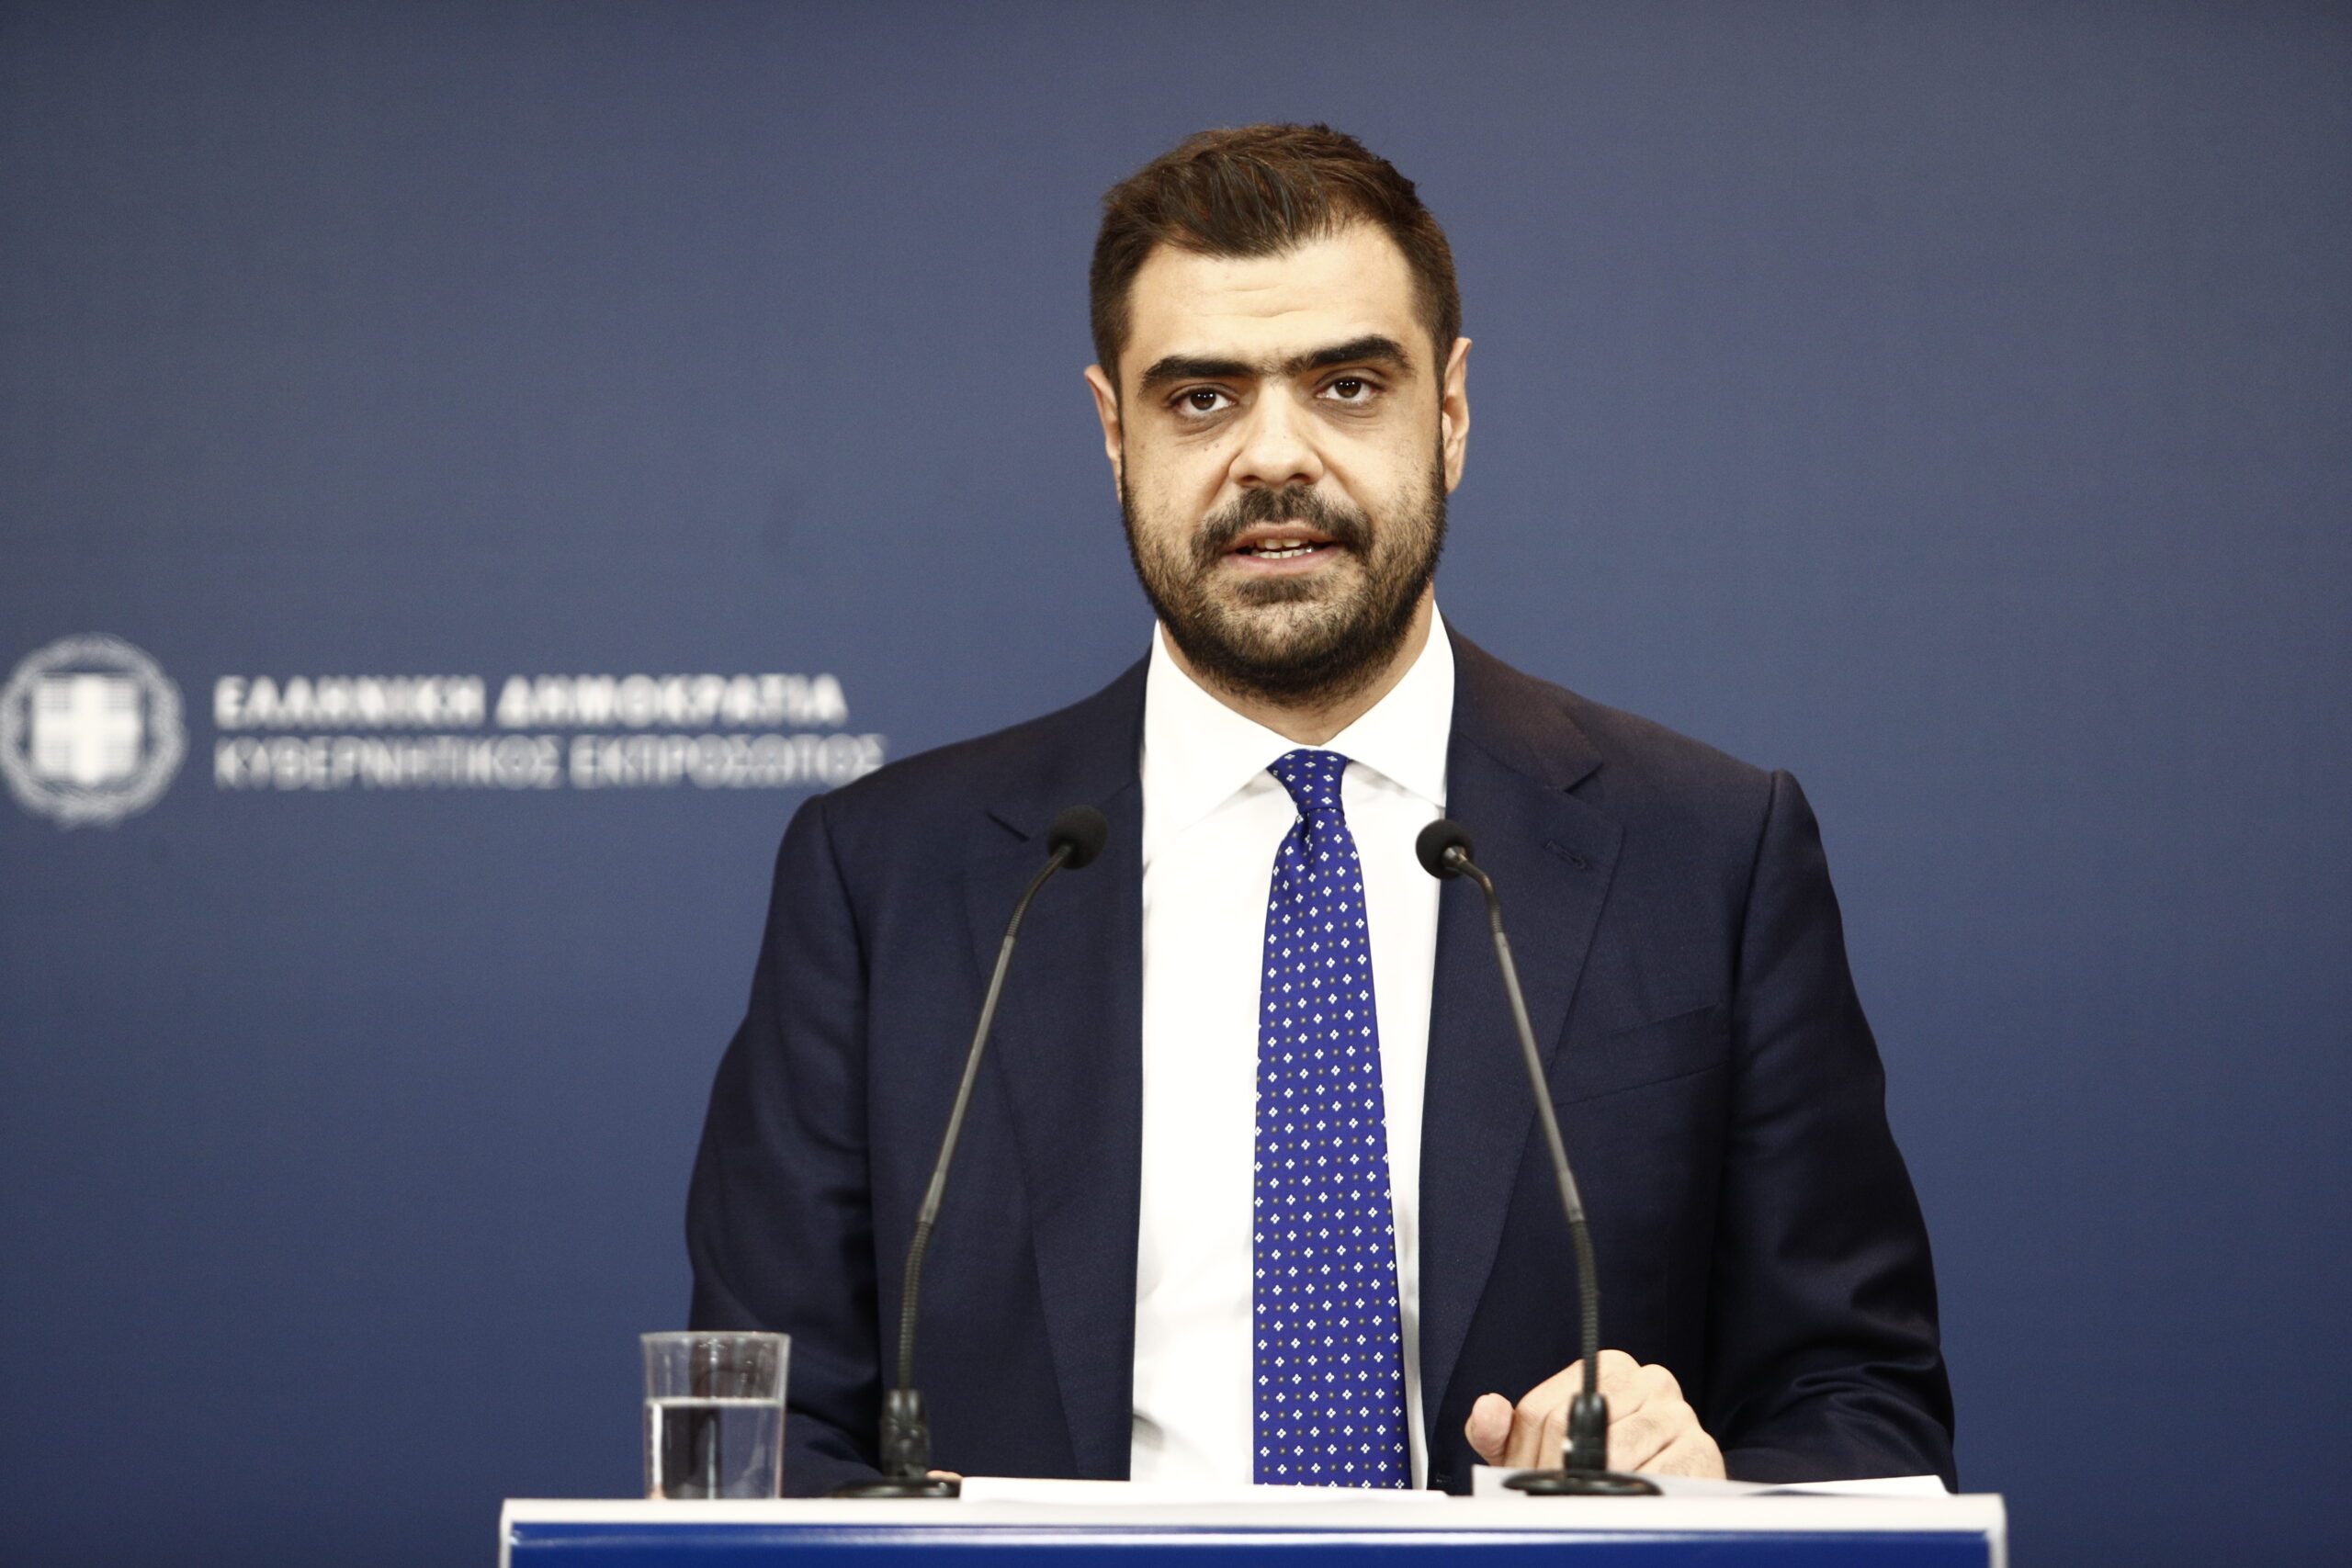 Π. Μαρινάκης: Είναι στοίχημα αξιοπιστίας η στάση των κομμάτων και των βουλευτών στο ν/σ για την ψήφο των αποδήμων